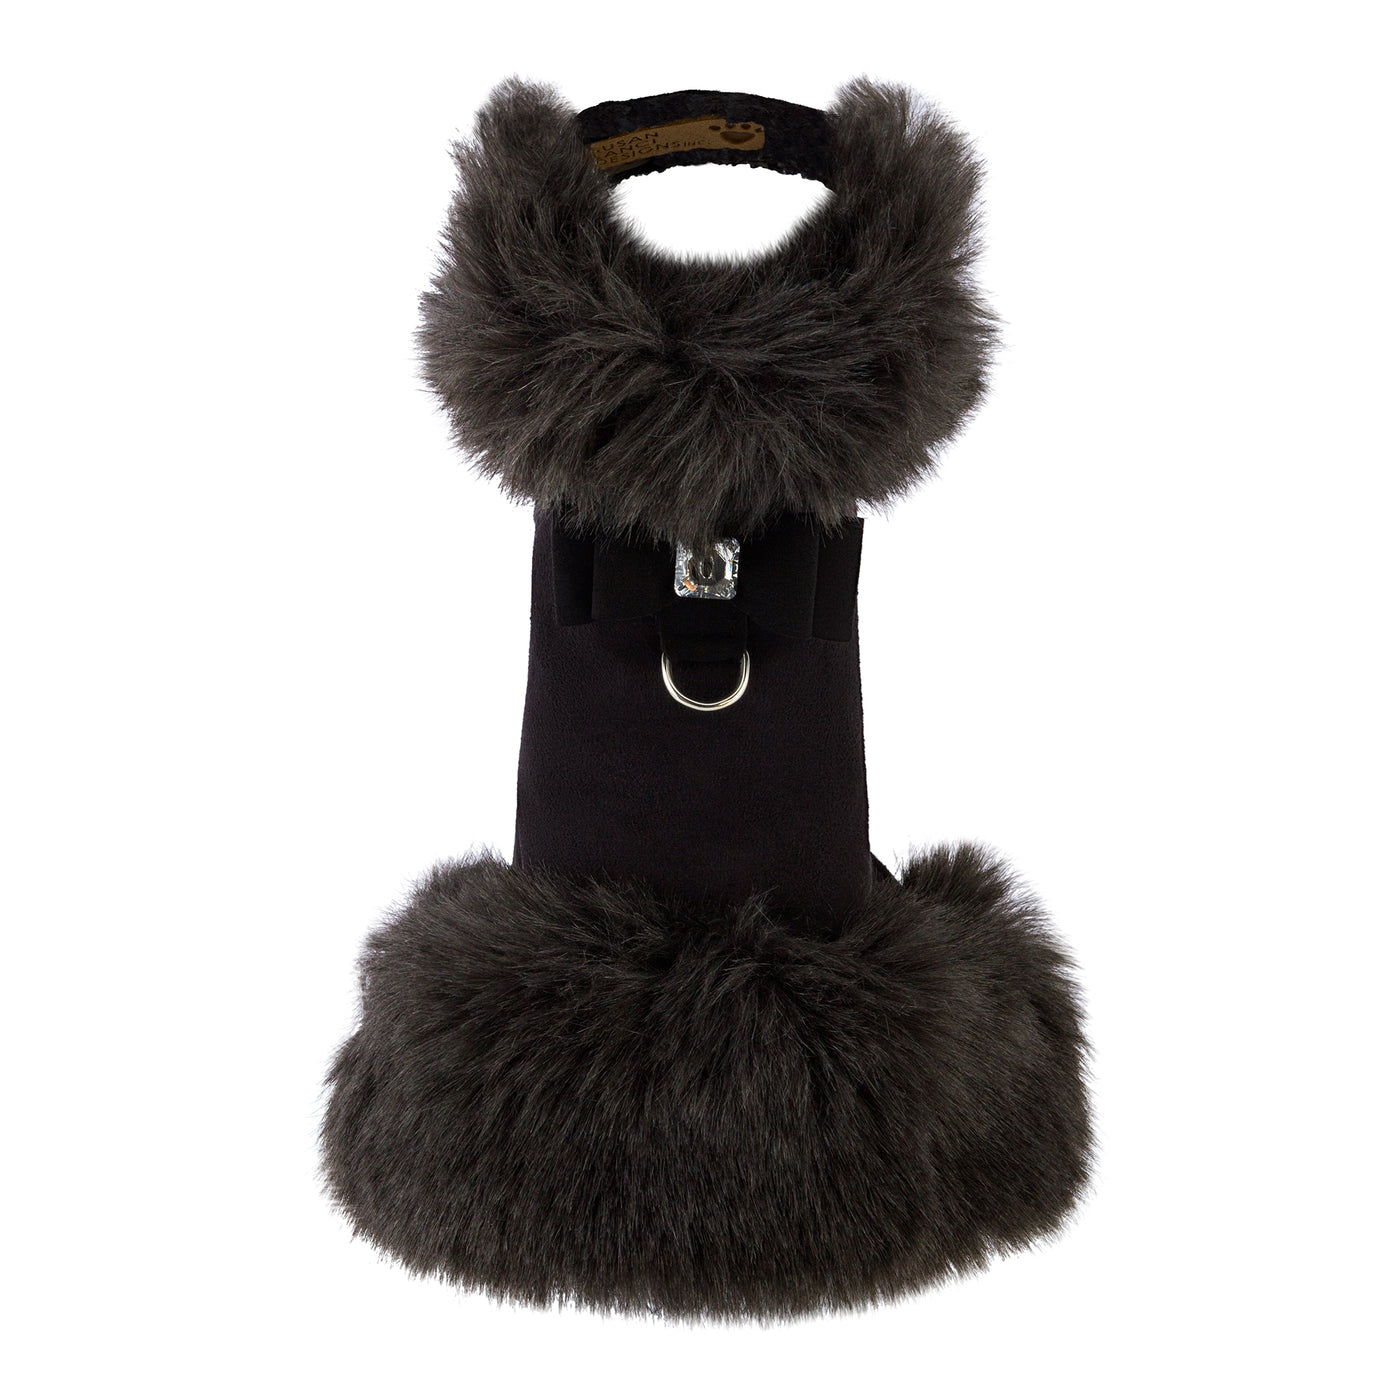 Big Bow Black Faux-Fur Pet Coat